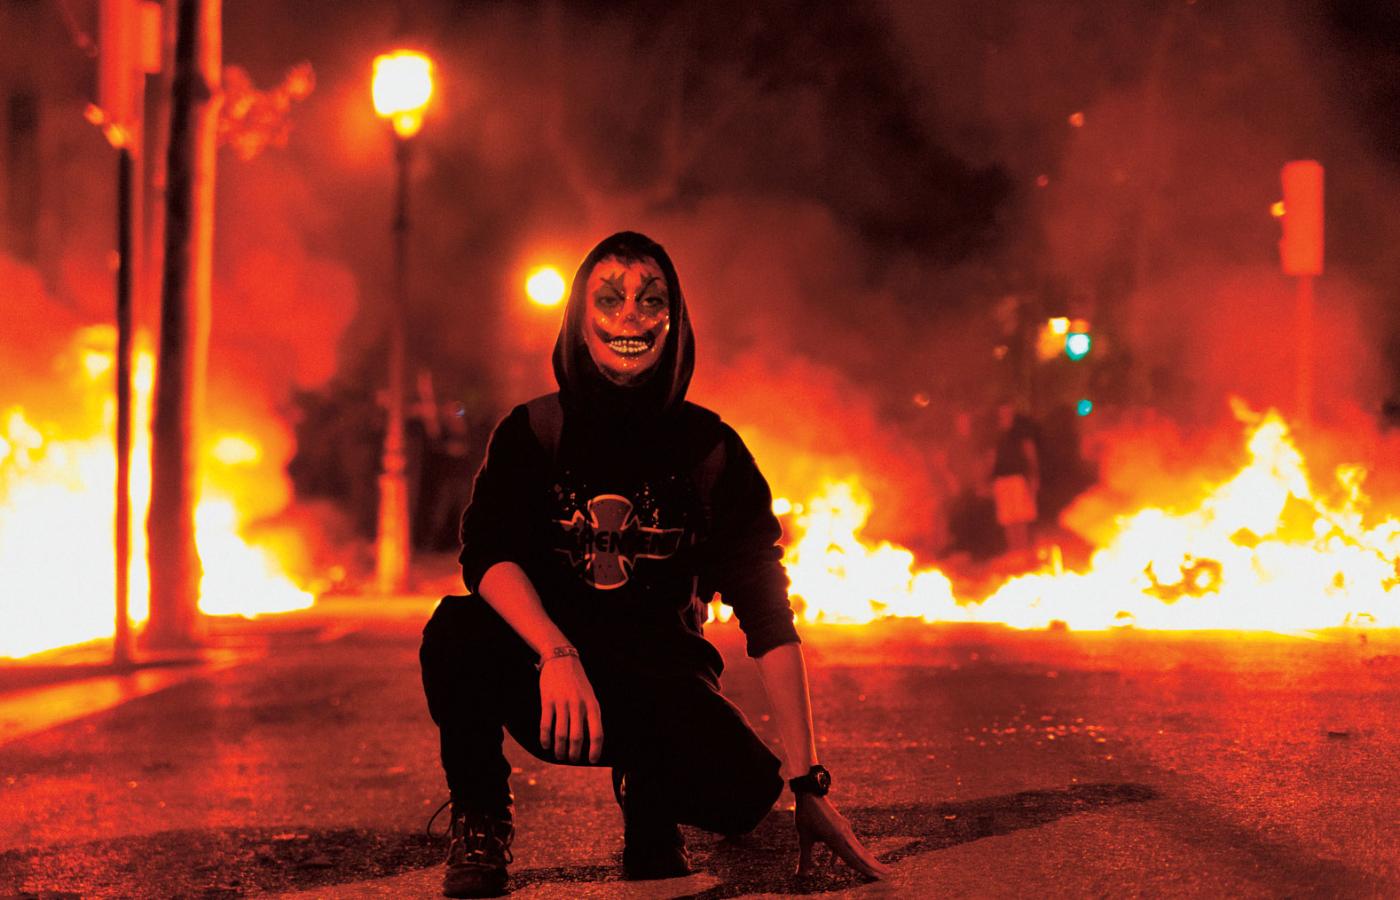 Wielu manifestantów zakrywa dziś twarze maskami Jokera. Na fot. zamieszki w Barcelonie.